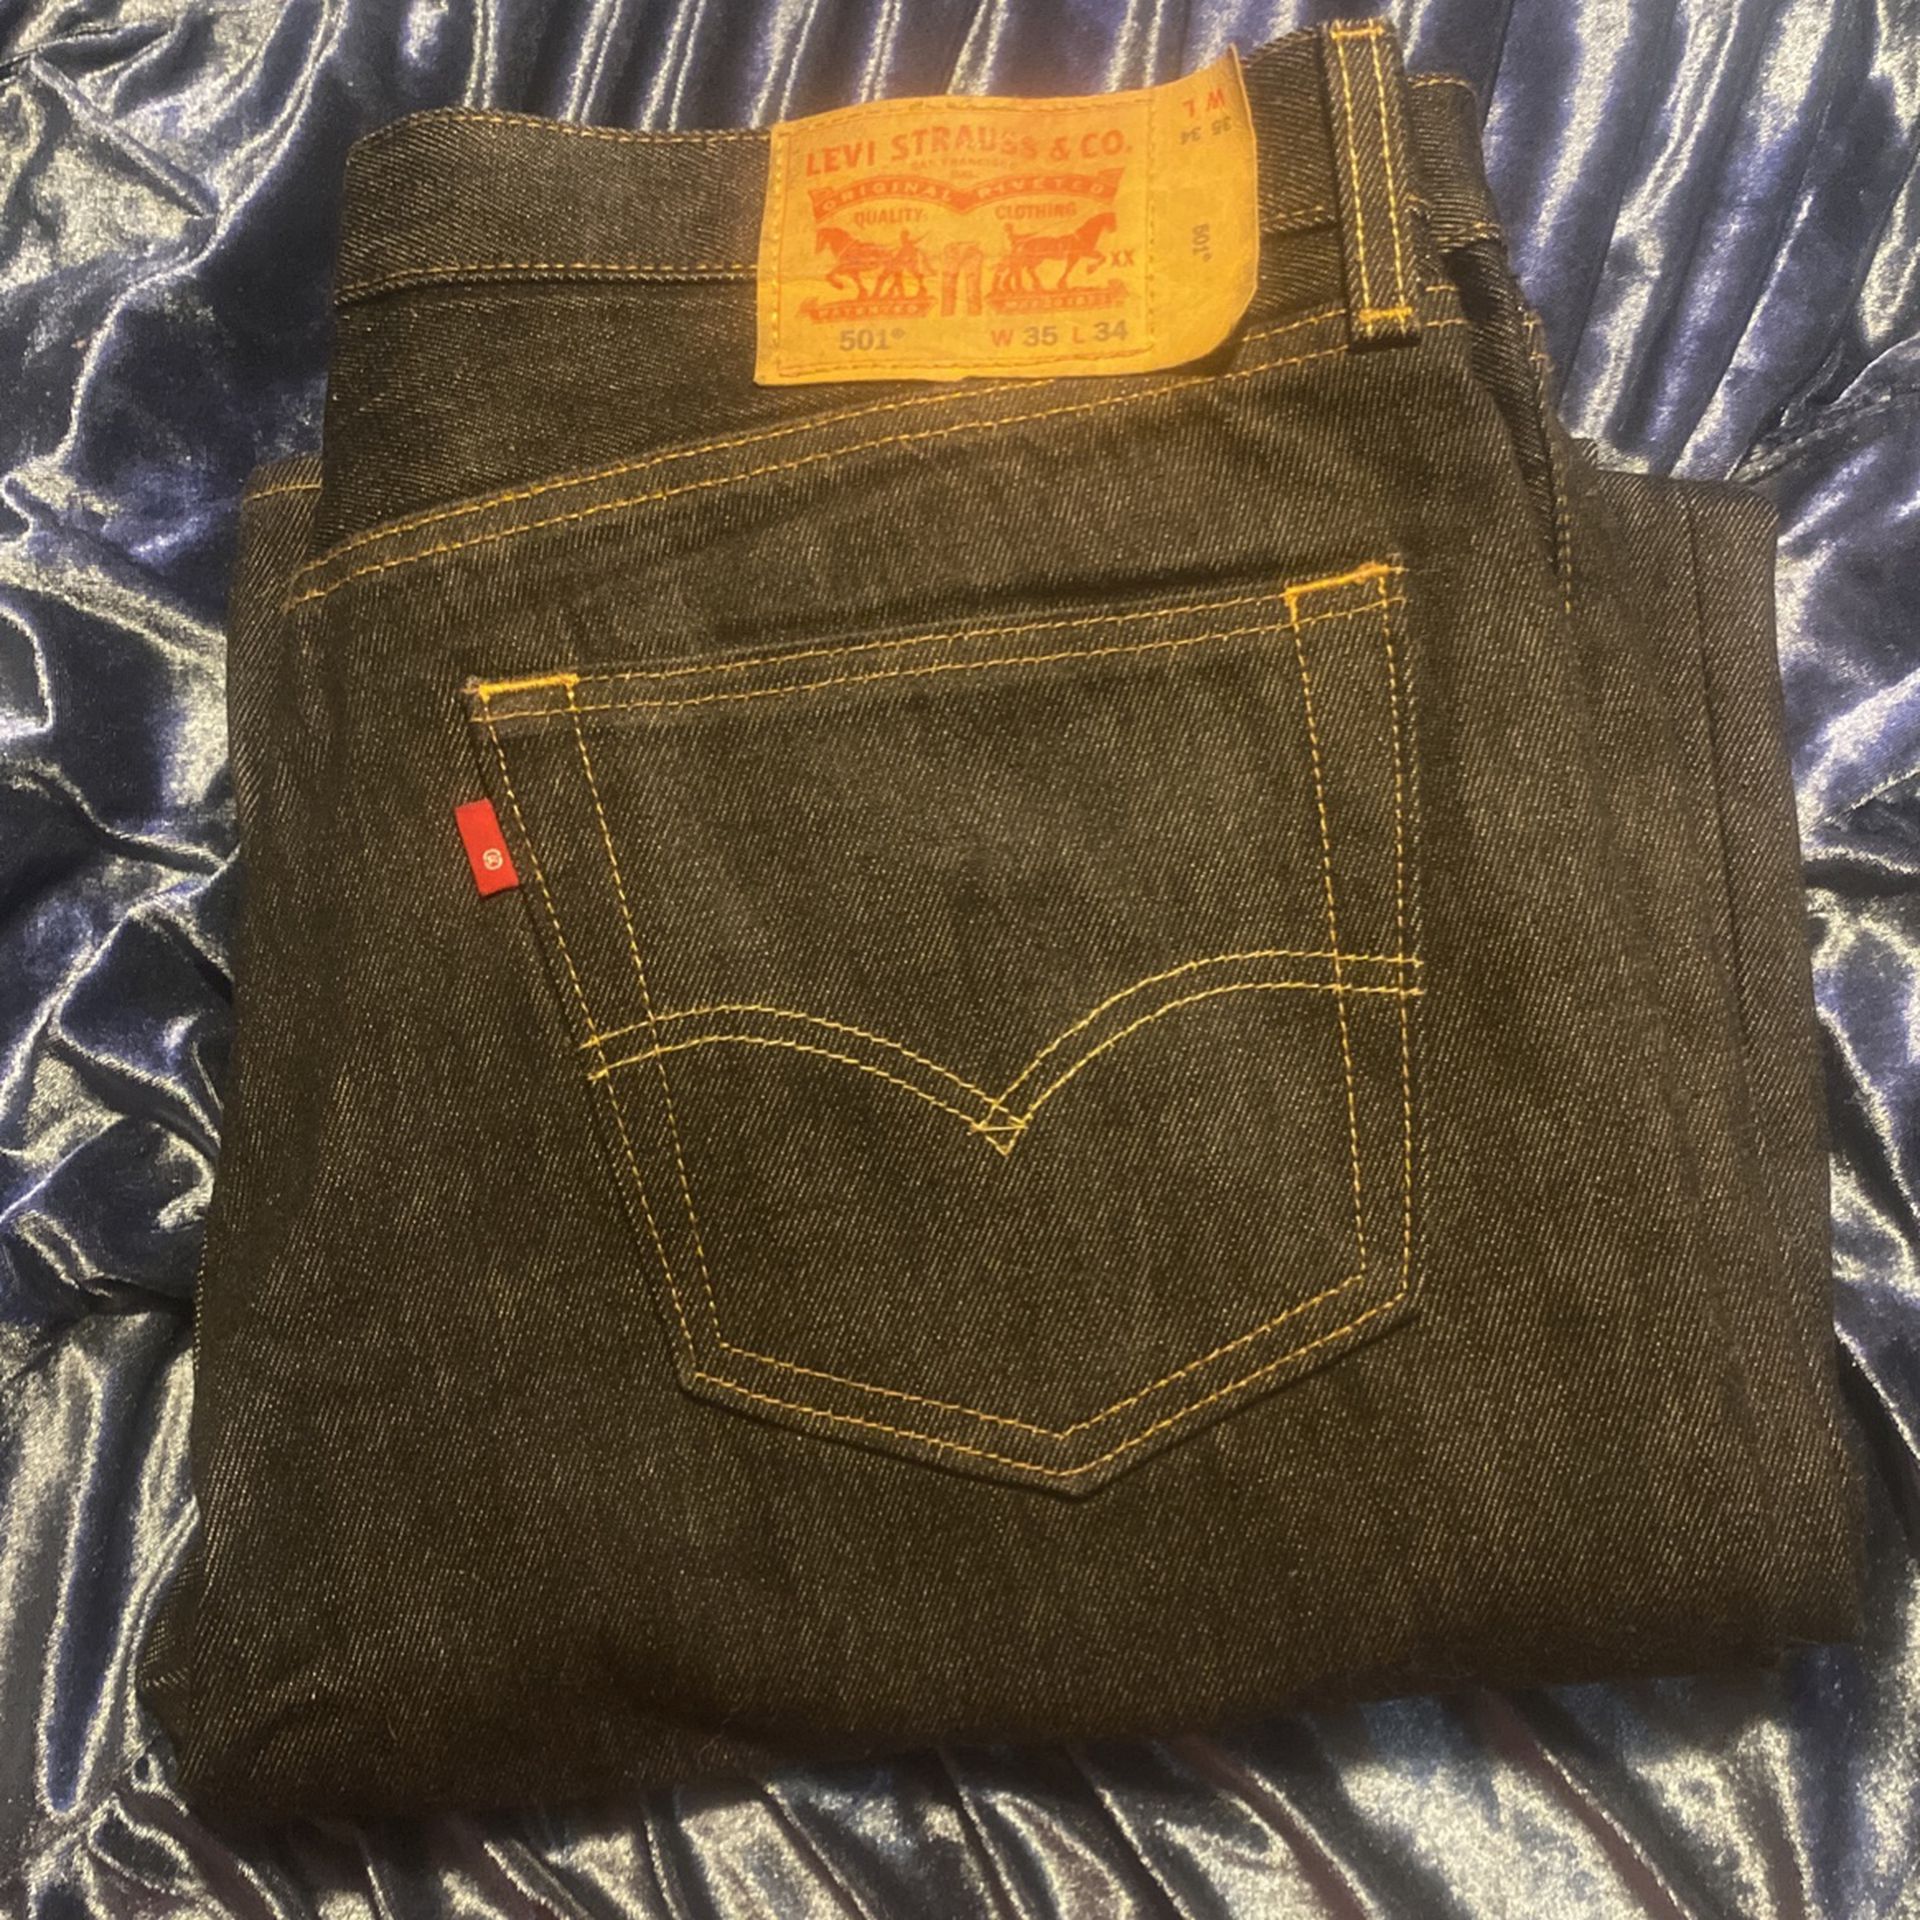 Levi’s Jeans 501 